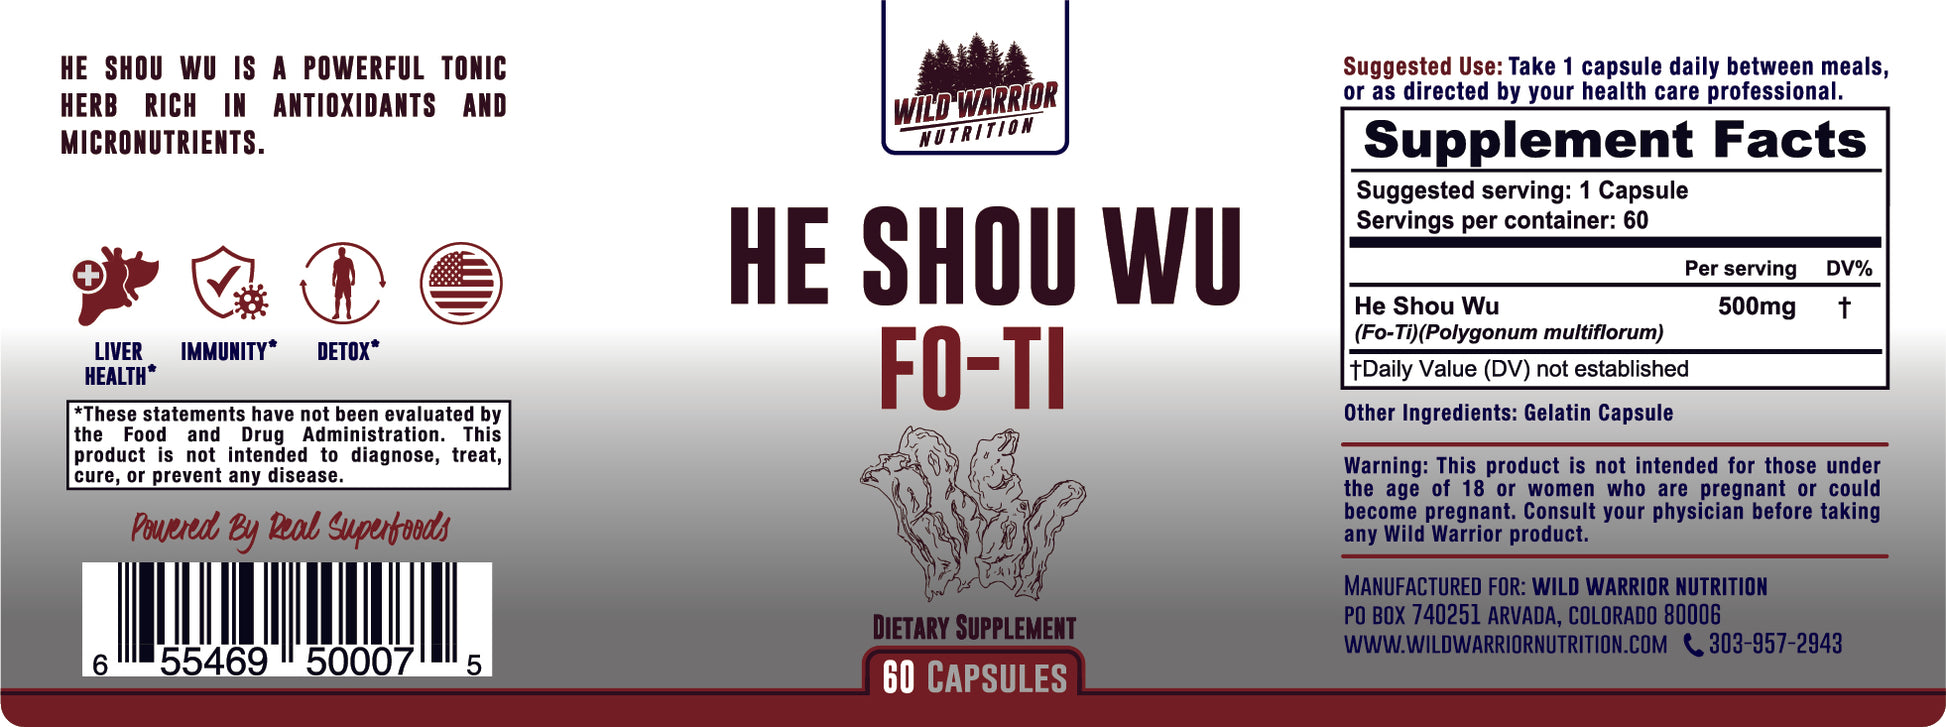 He Shou Wu Full Label